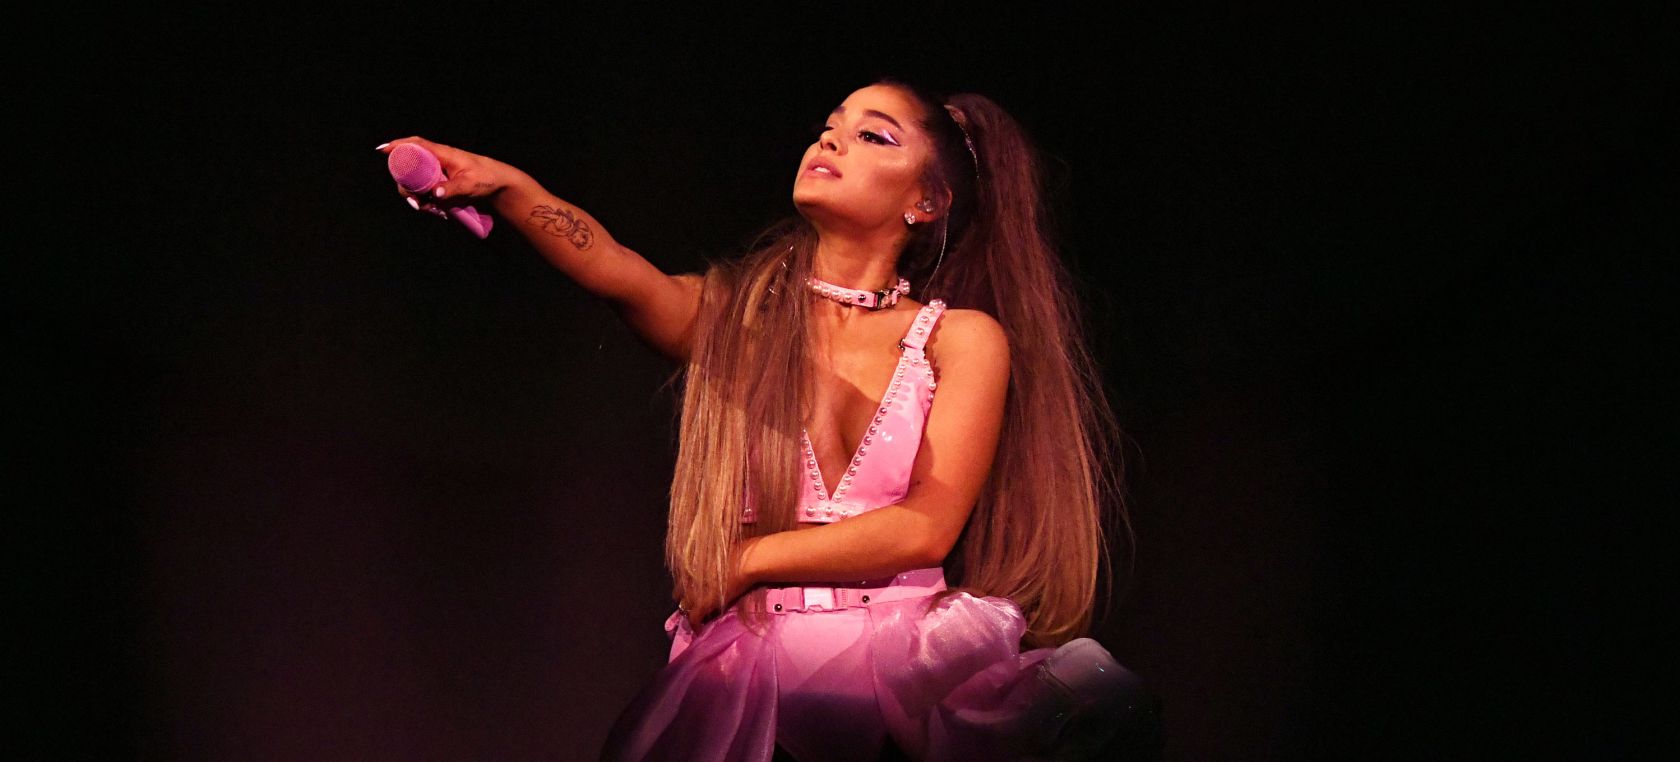 ANÁLISIS de 'Positions': Ariana Grande rinde homenaje al poder de la mujer  a través de la sexualidad | Música | LOS40